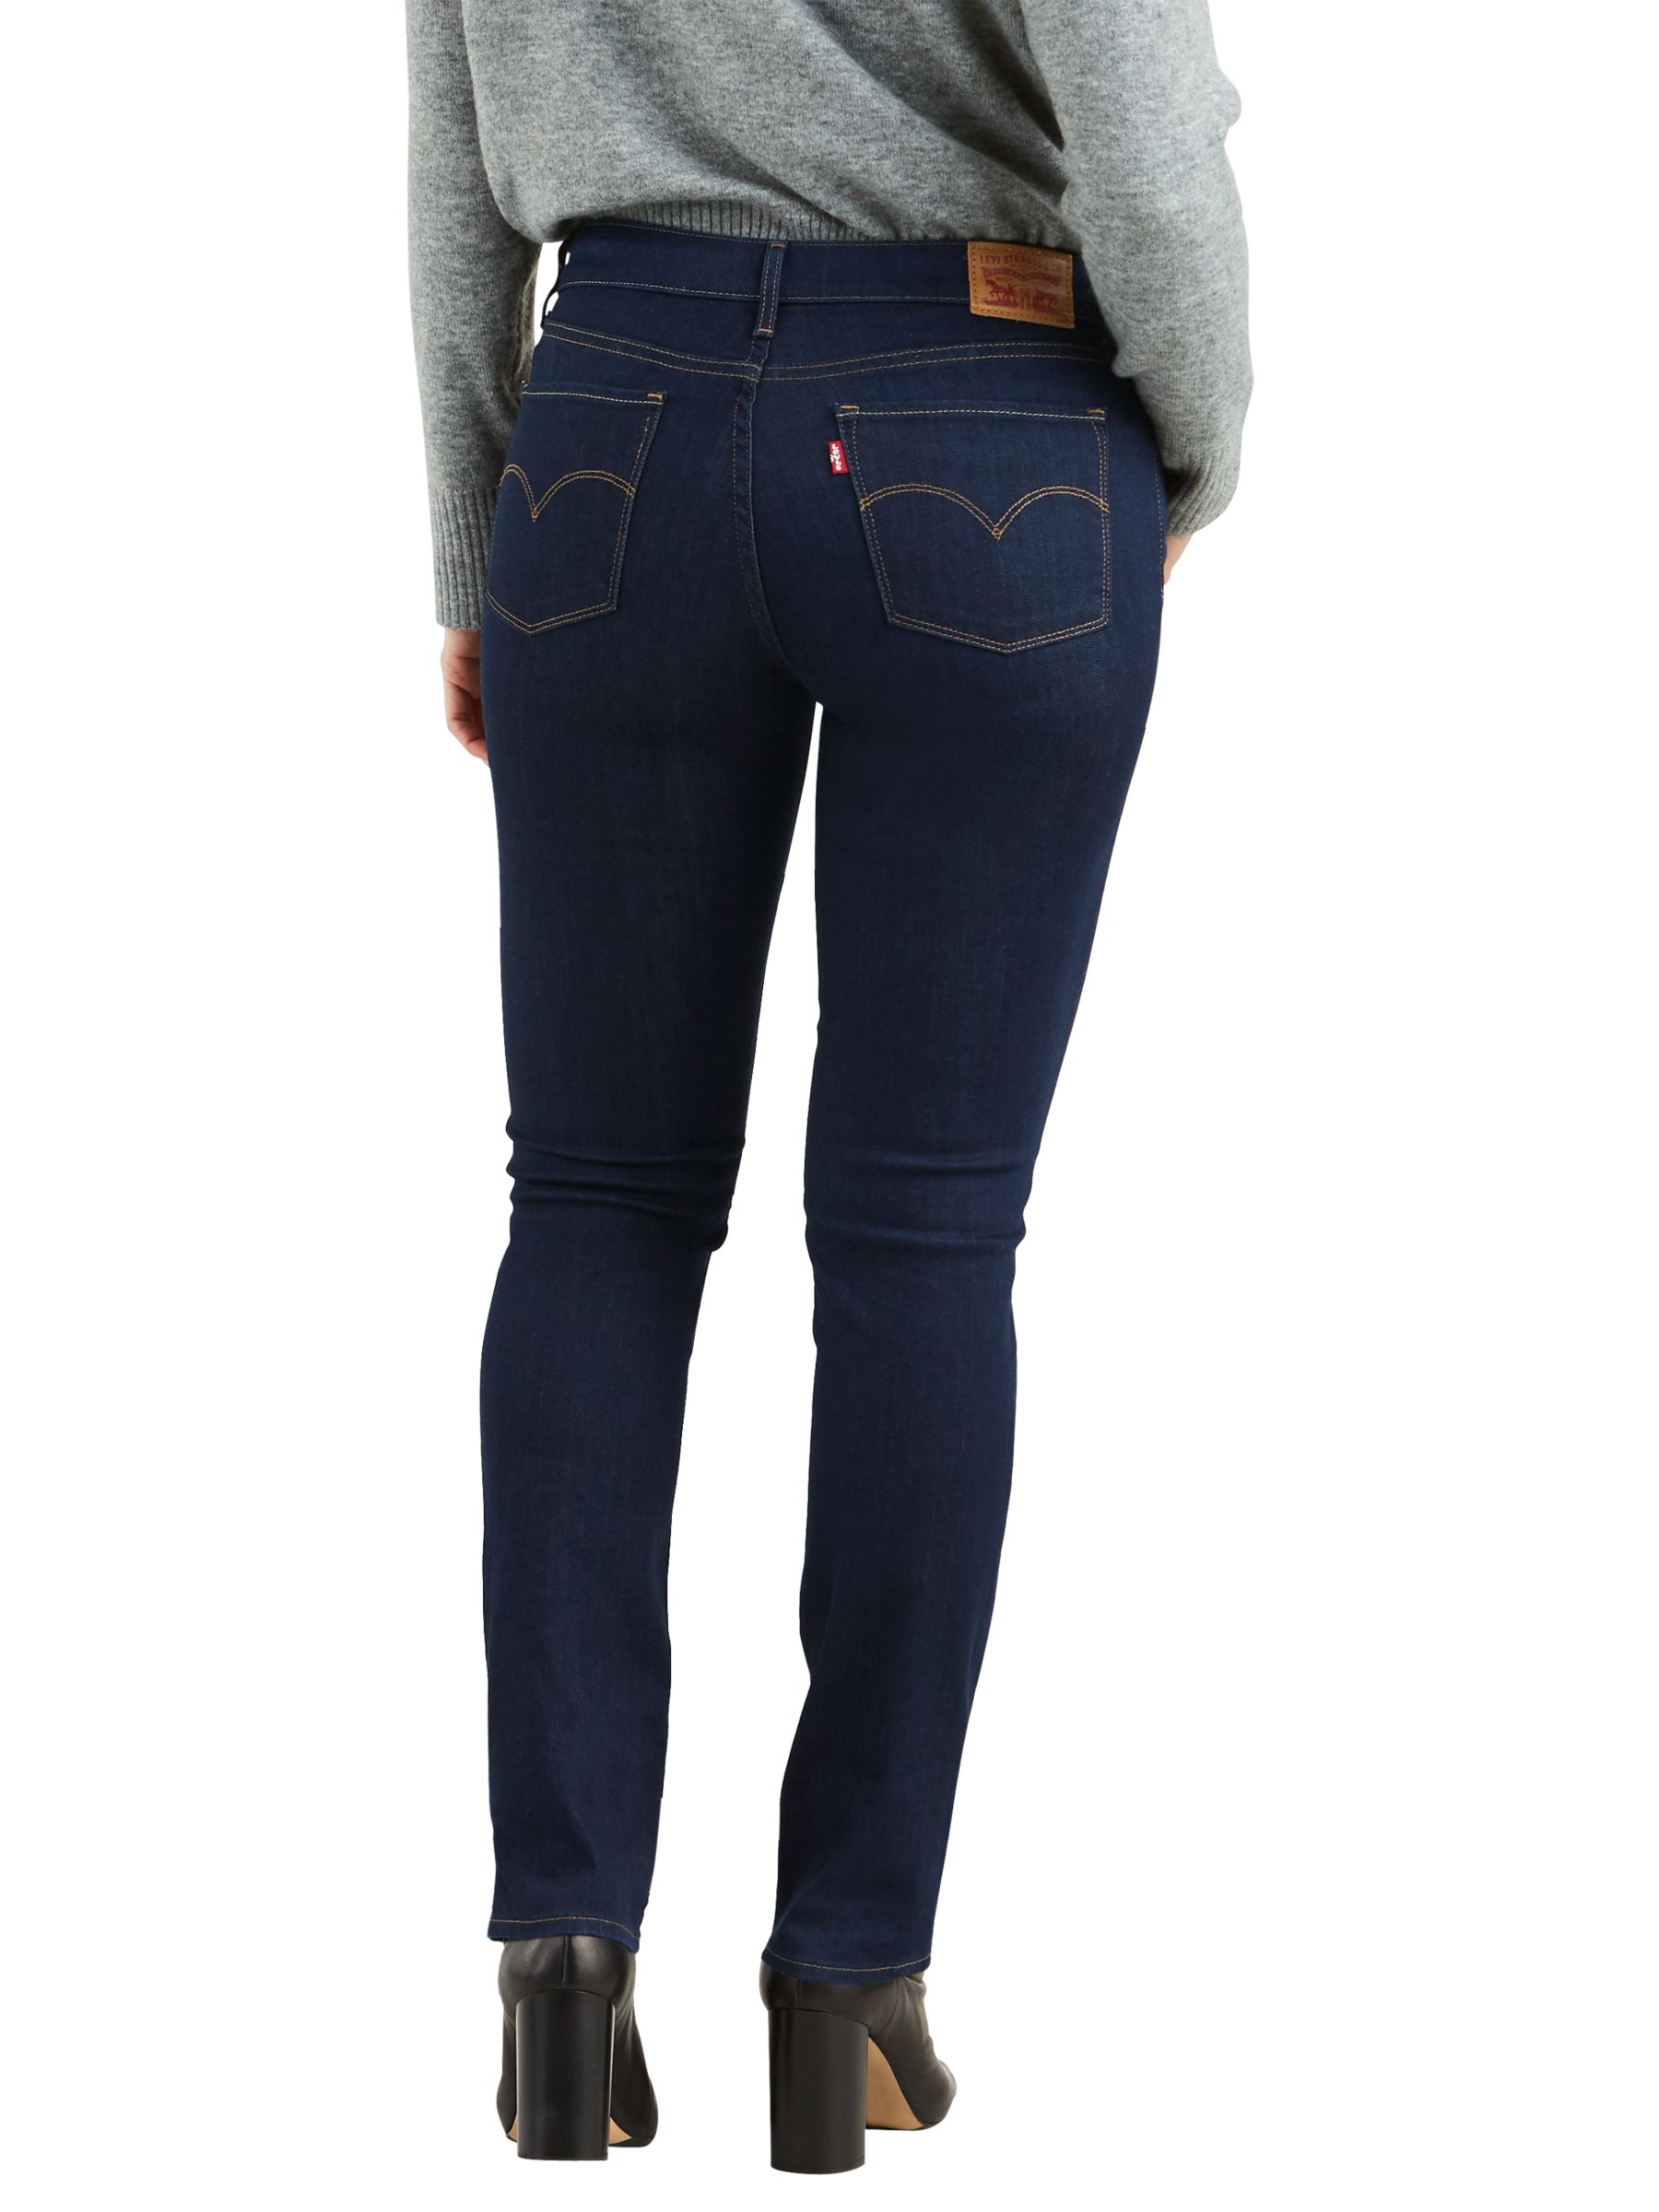 levi's 712 women's slim fit jeans